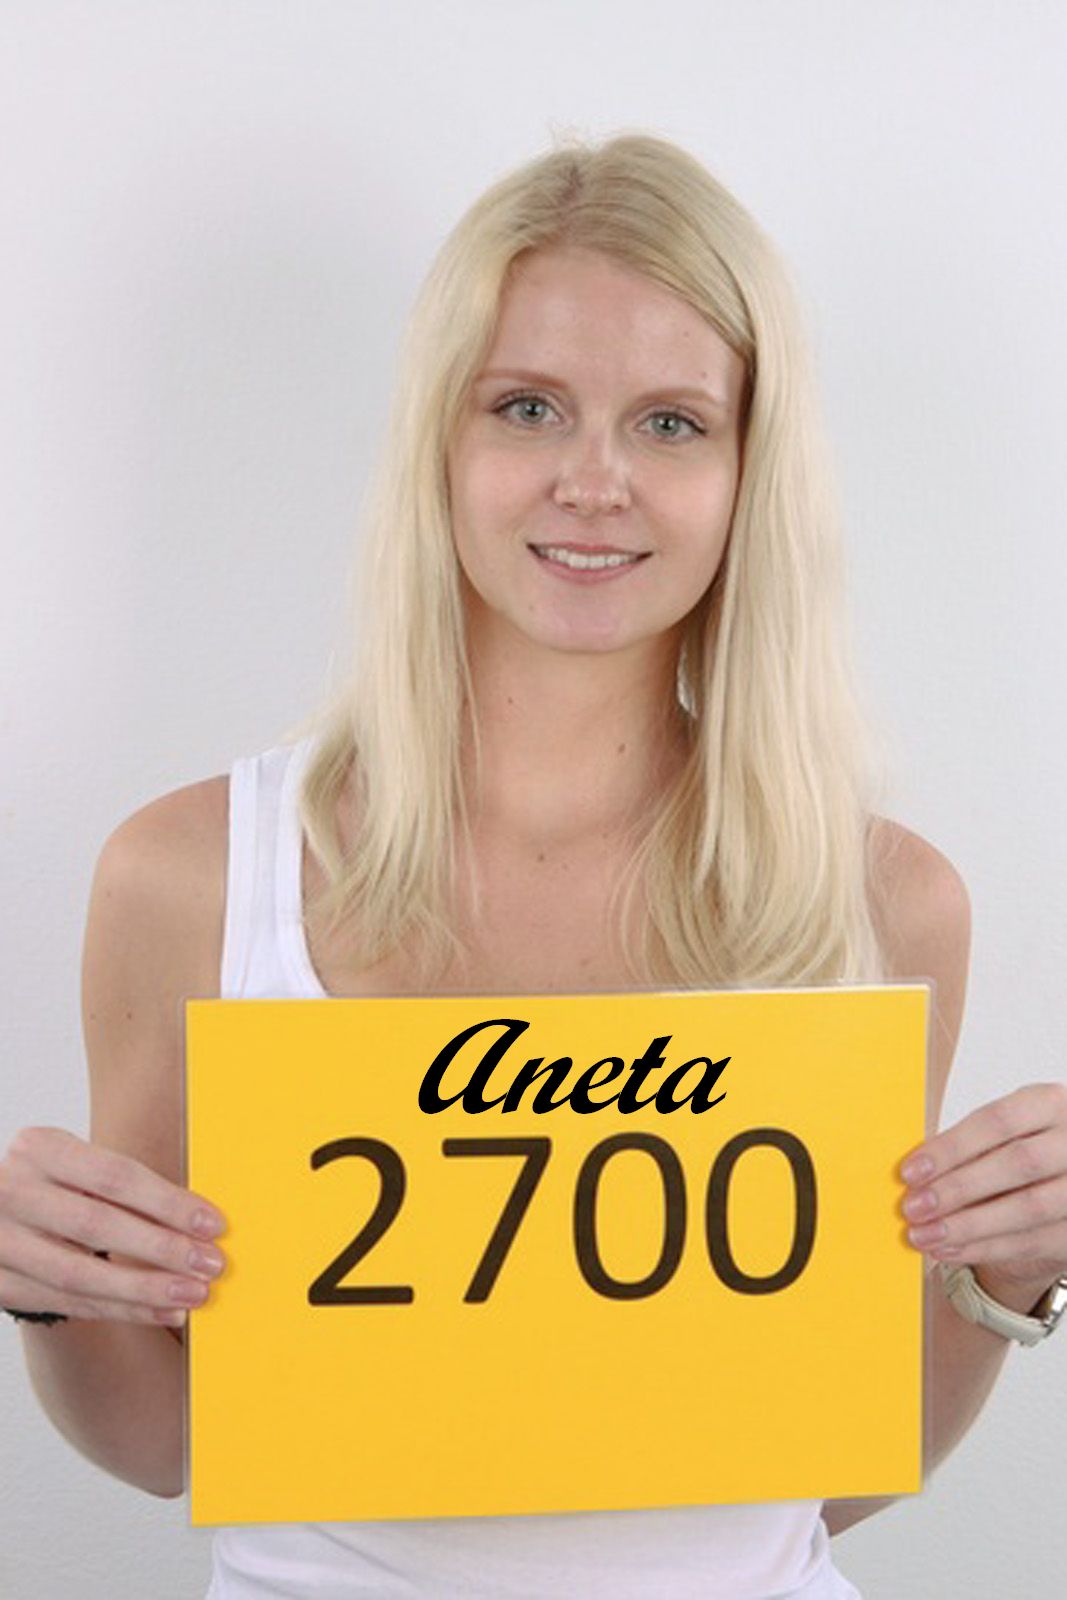 Czech Casting 03 2700 Aneta 1 Foto Porno Eporner